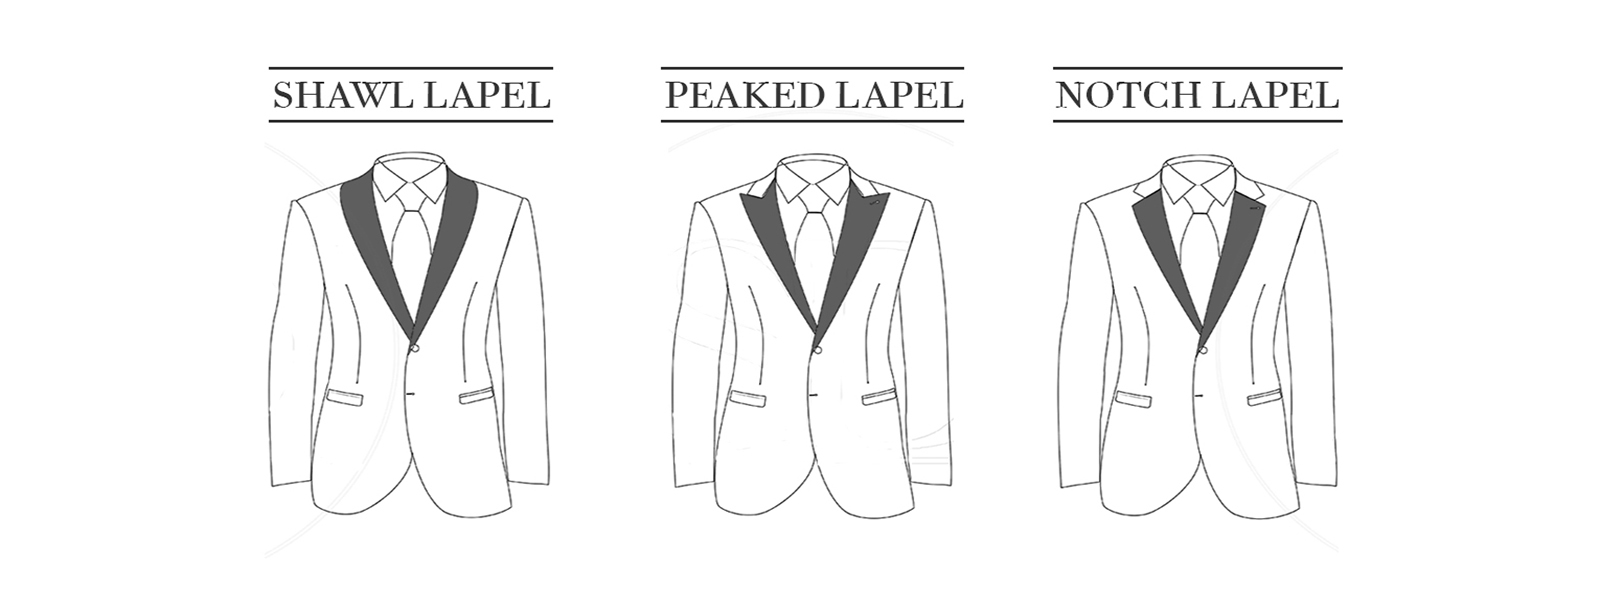 Anatomy of a suit jacket | Tailoring techniques, Suits, Suit jacket